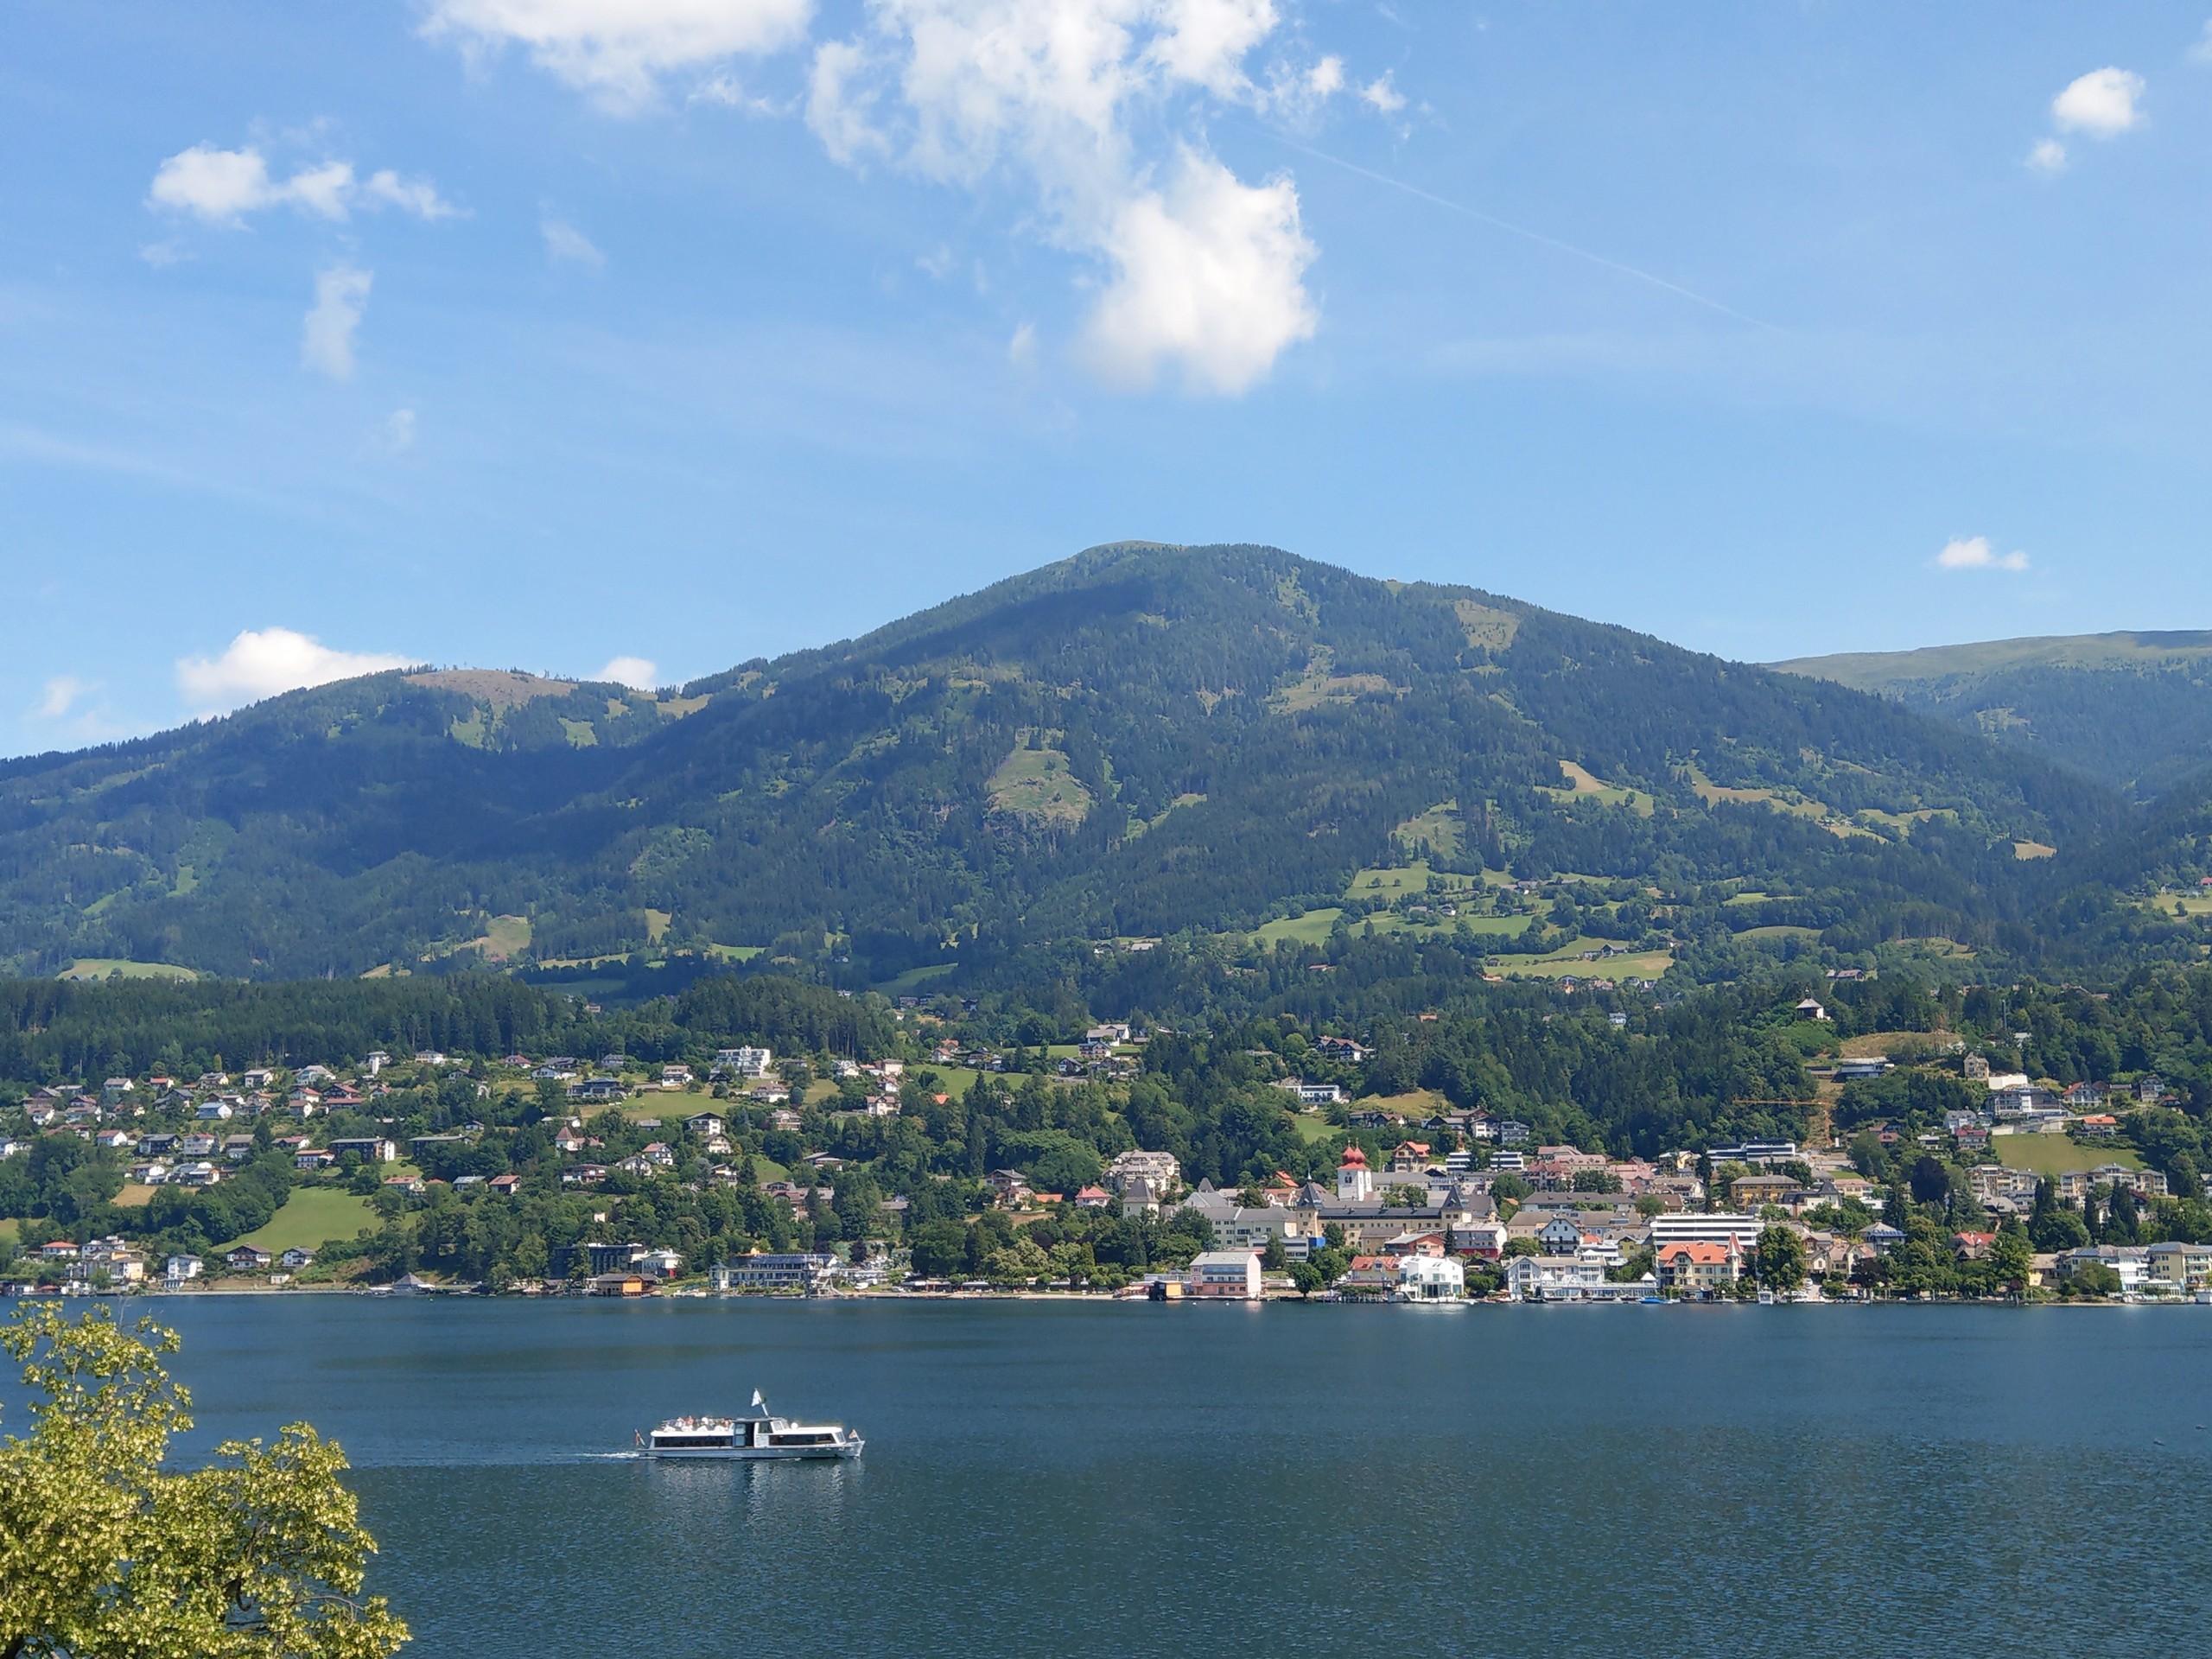 Beautiul town near the lake in Carinthia